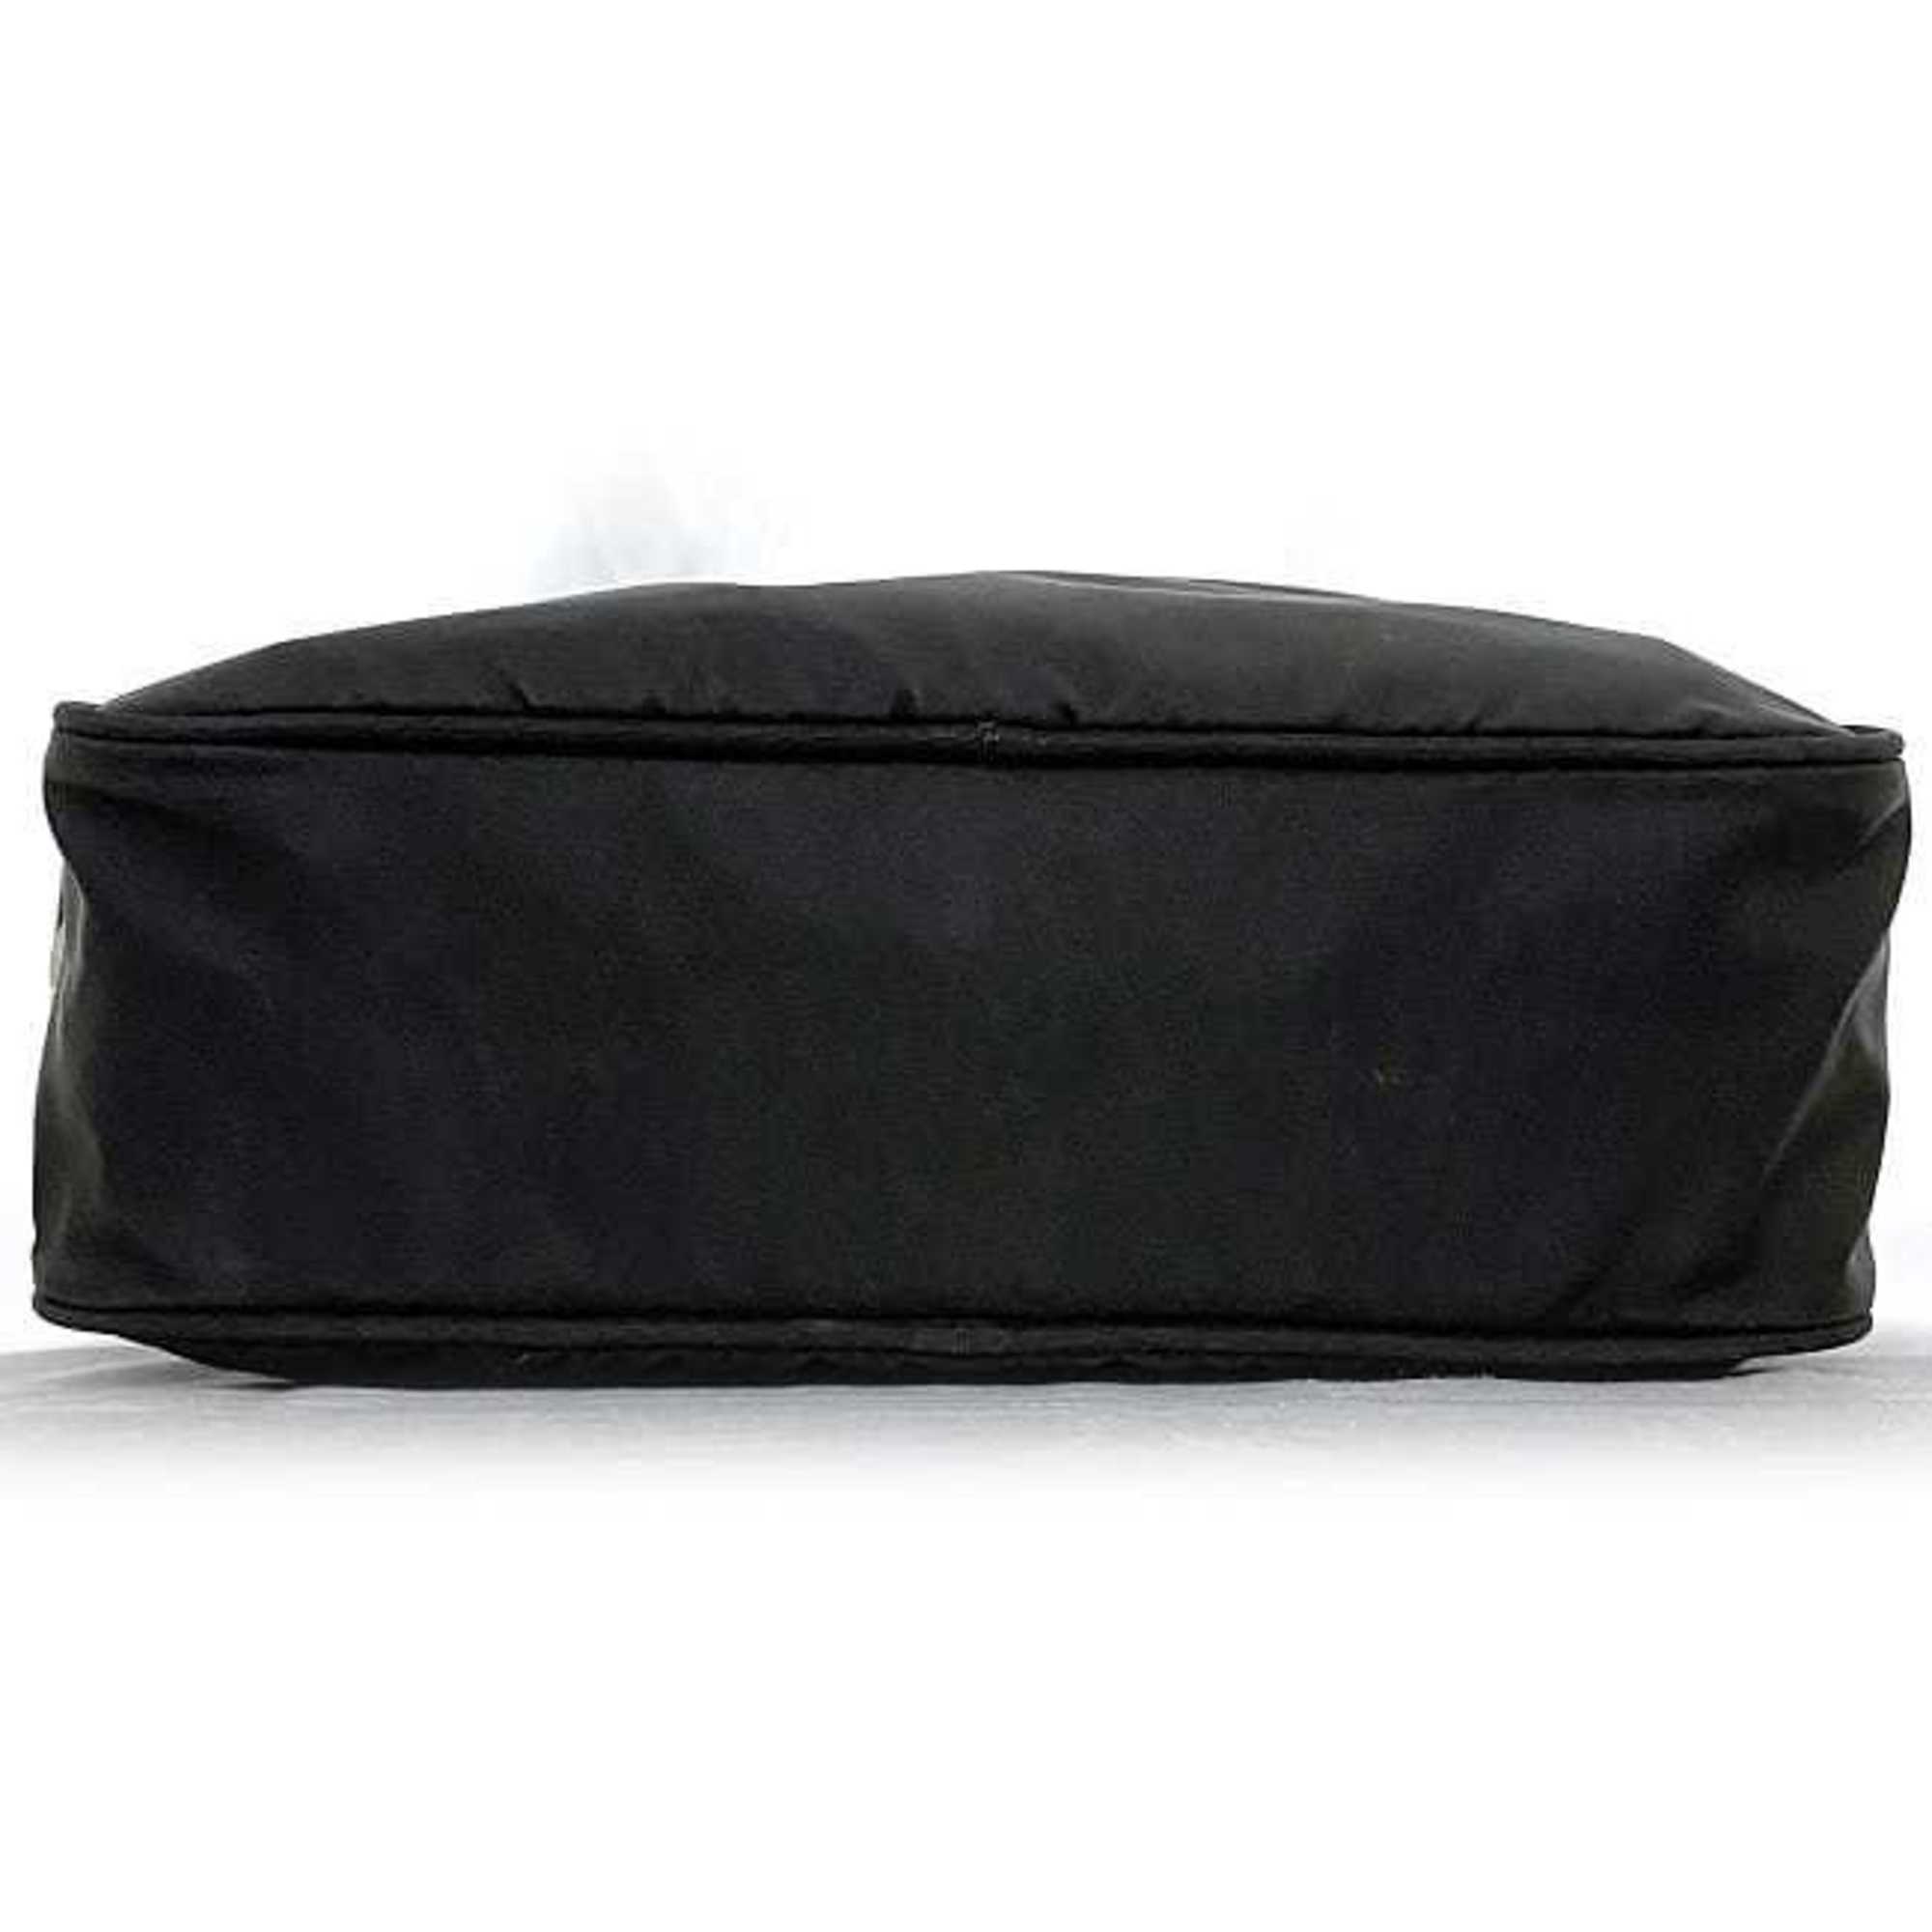 Prada Shoulder Bag Black Tessuto ec-20626 Camera Nylon Leather PRADA Triangle Unisex Compact